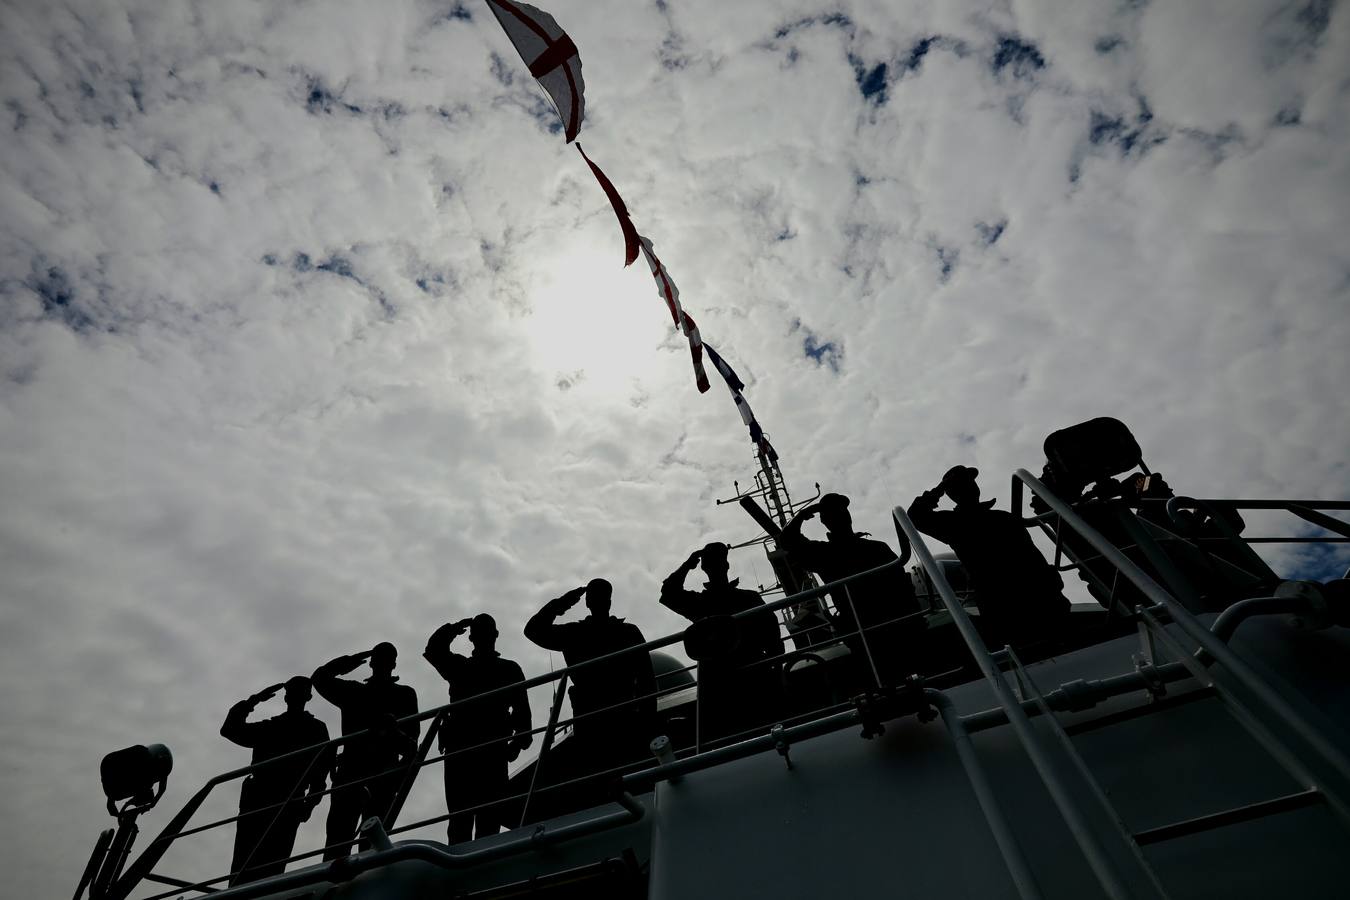 FOTOS: 25 aniversario de la creación del Servicio Marítimo de la Guardia Civil